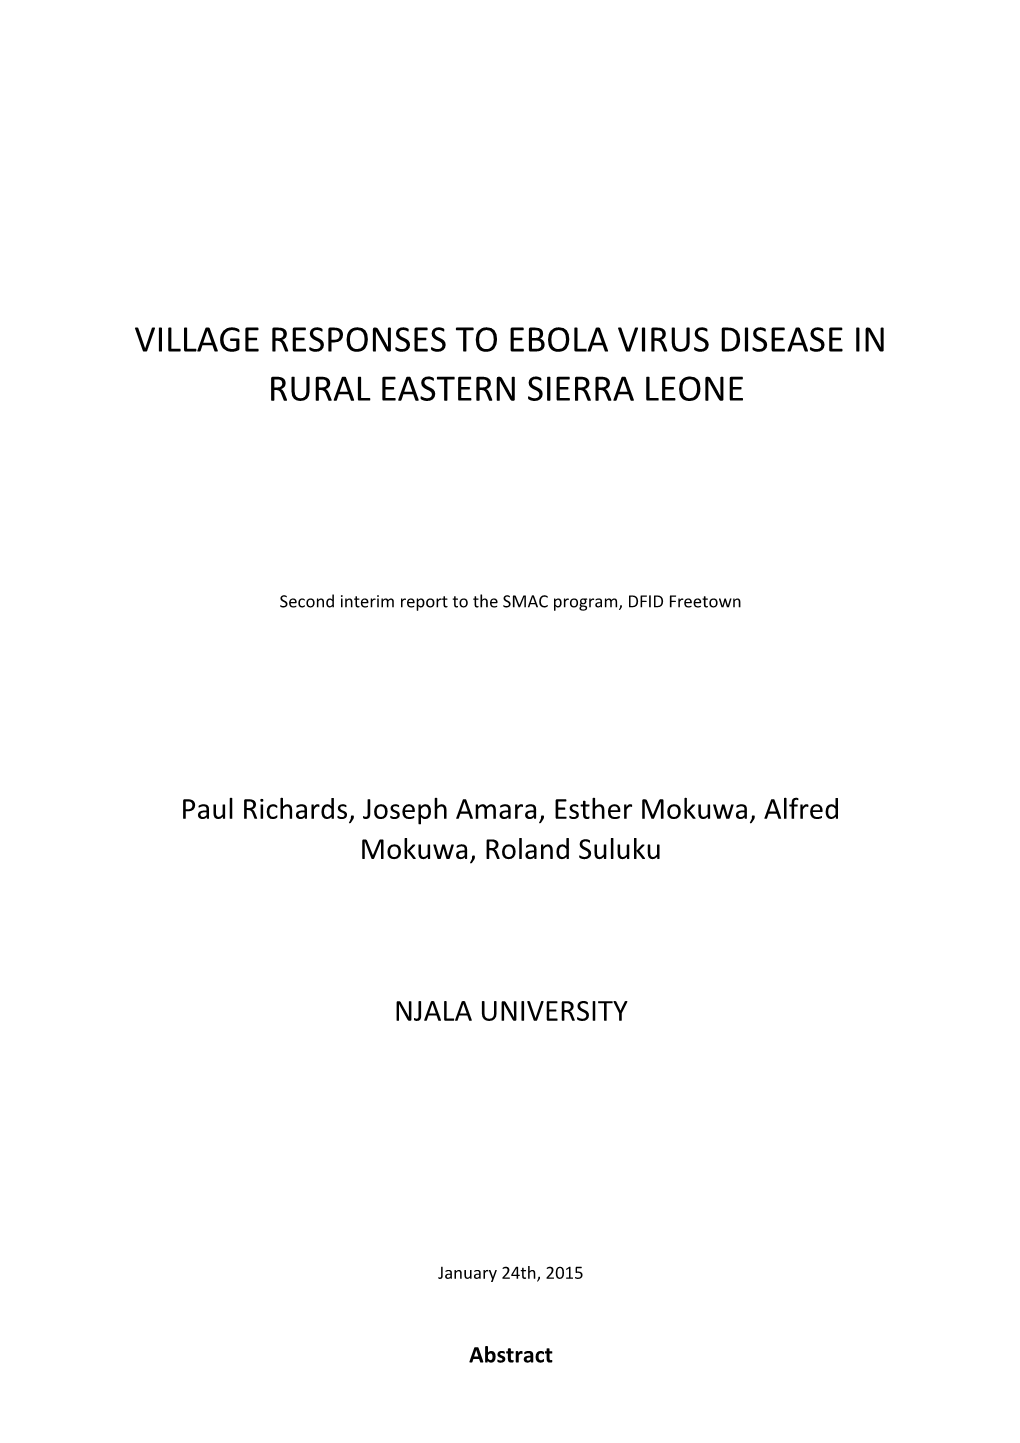 Village Responses to Ebola Virus Disease in Rural Eastern Sierra Leone